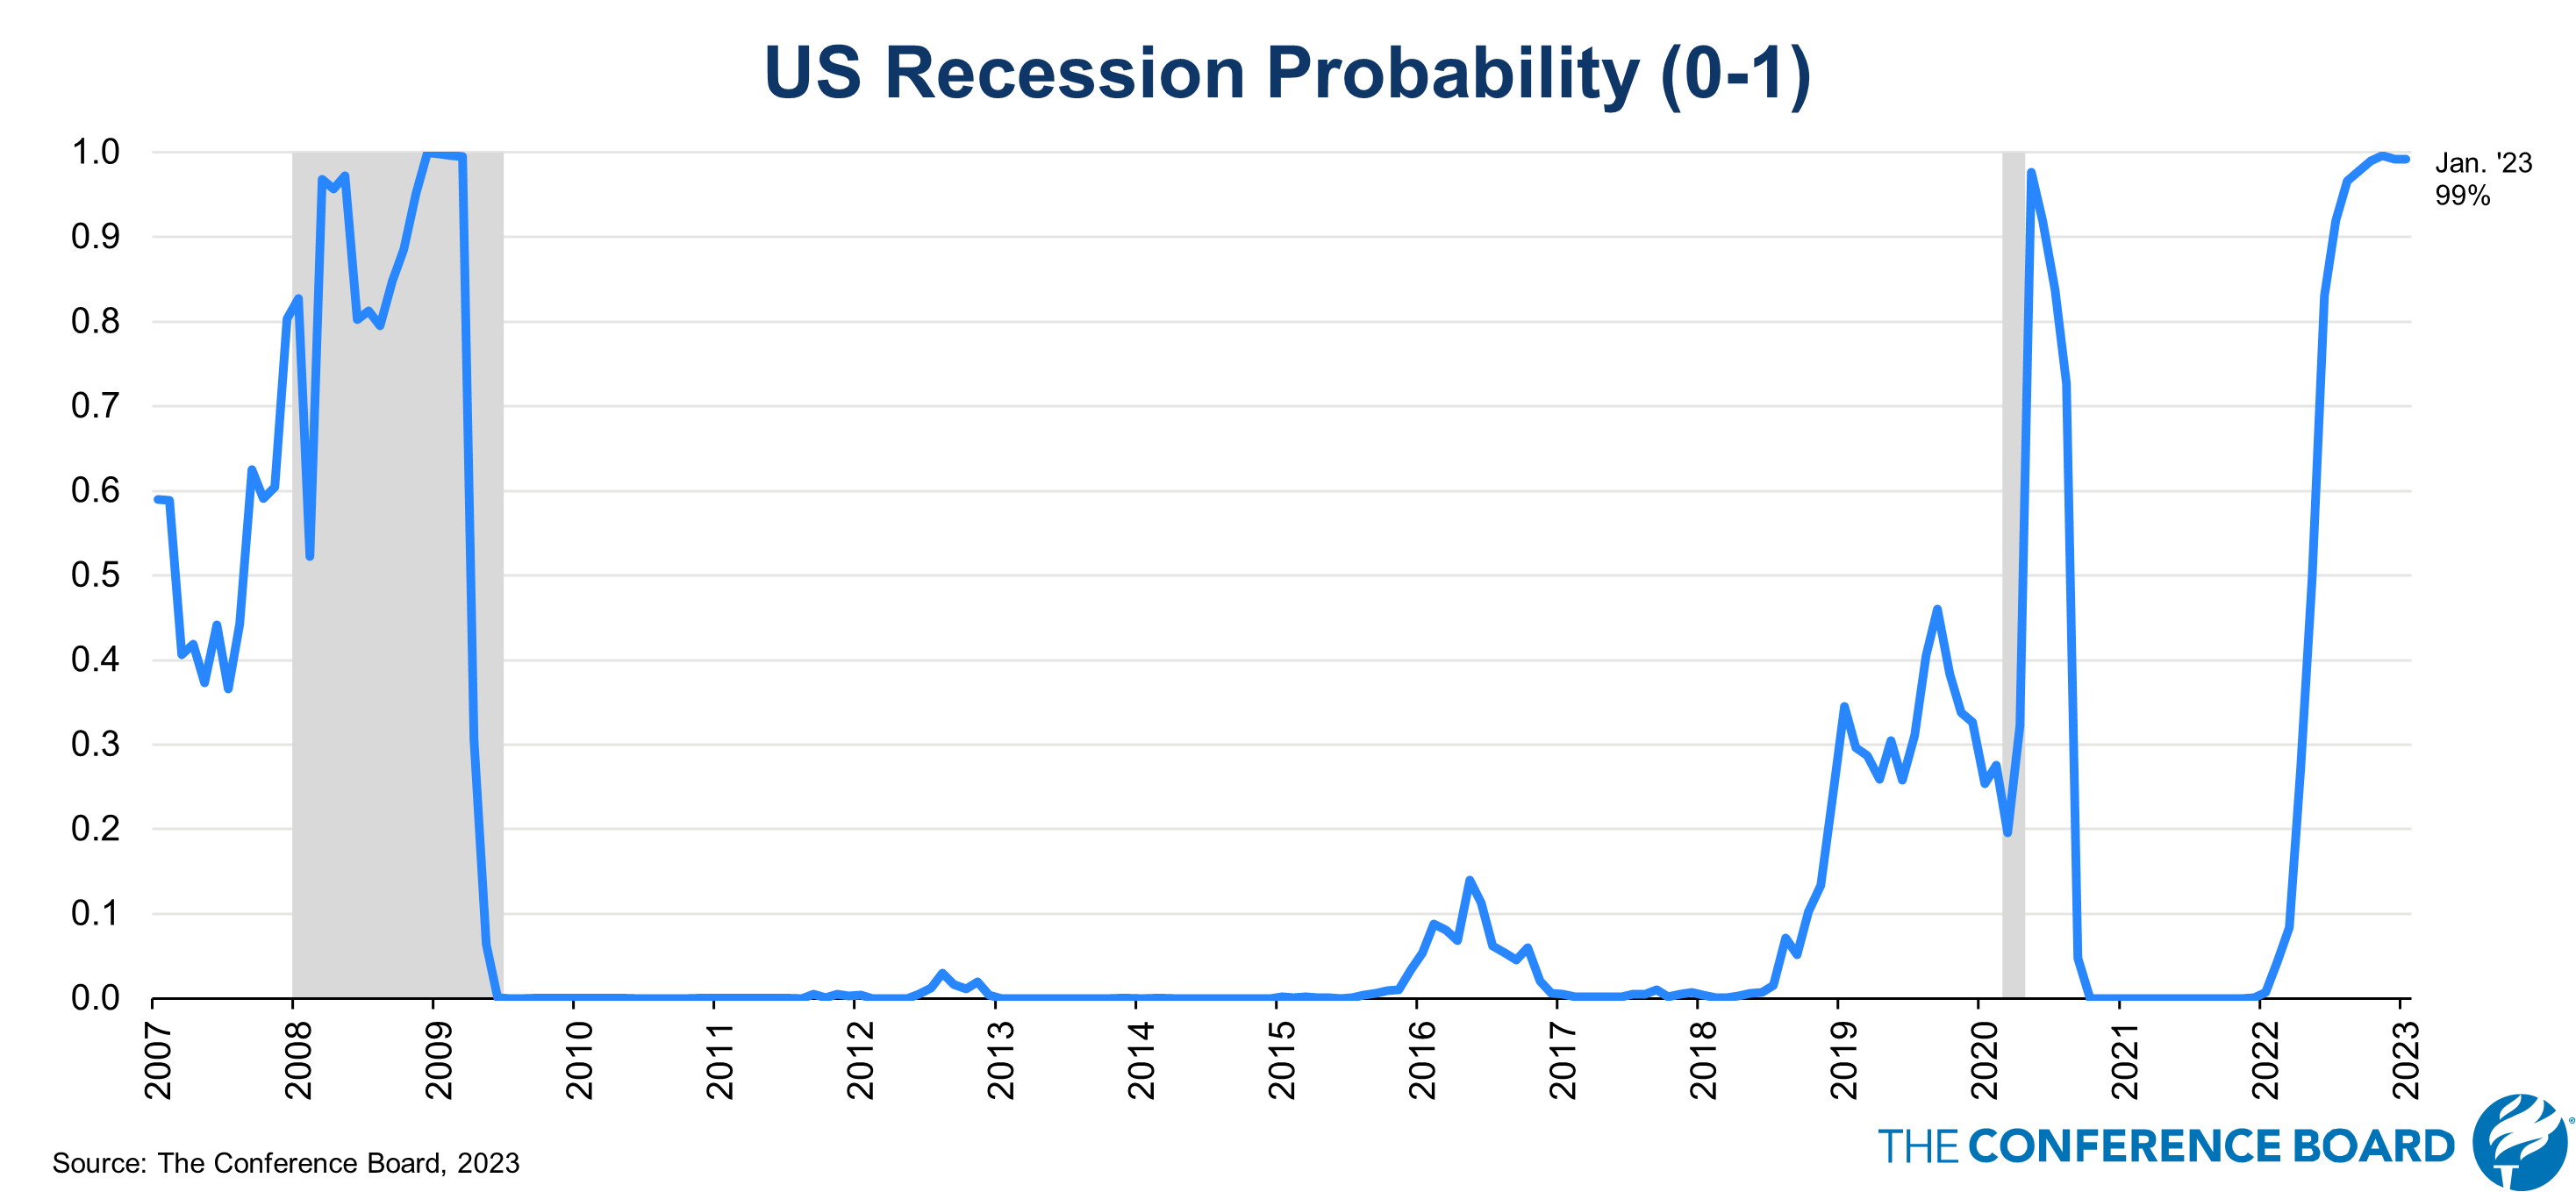 Recession probability: Các hình ảnh liên quan đến xác suất suy thoái kinh tế sẽ cung cấp cho bạn cái nhìn toàn diện về nguy cơ suy thoái và những cảnh báo cần thiết. Xem chúng để hiểu rõ hơn về kinh tế và đưa ra quyết định đúng đắn.